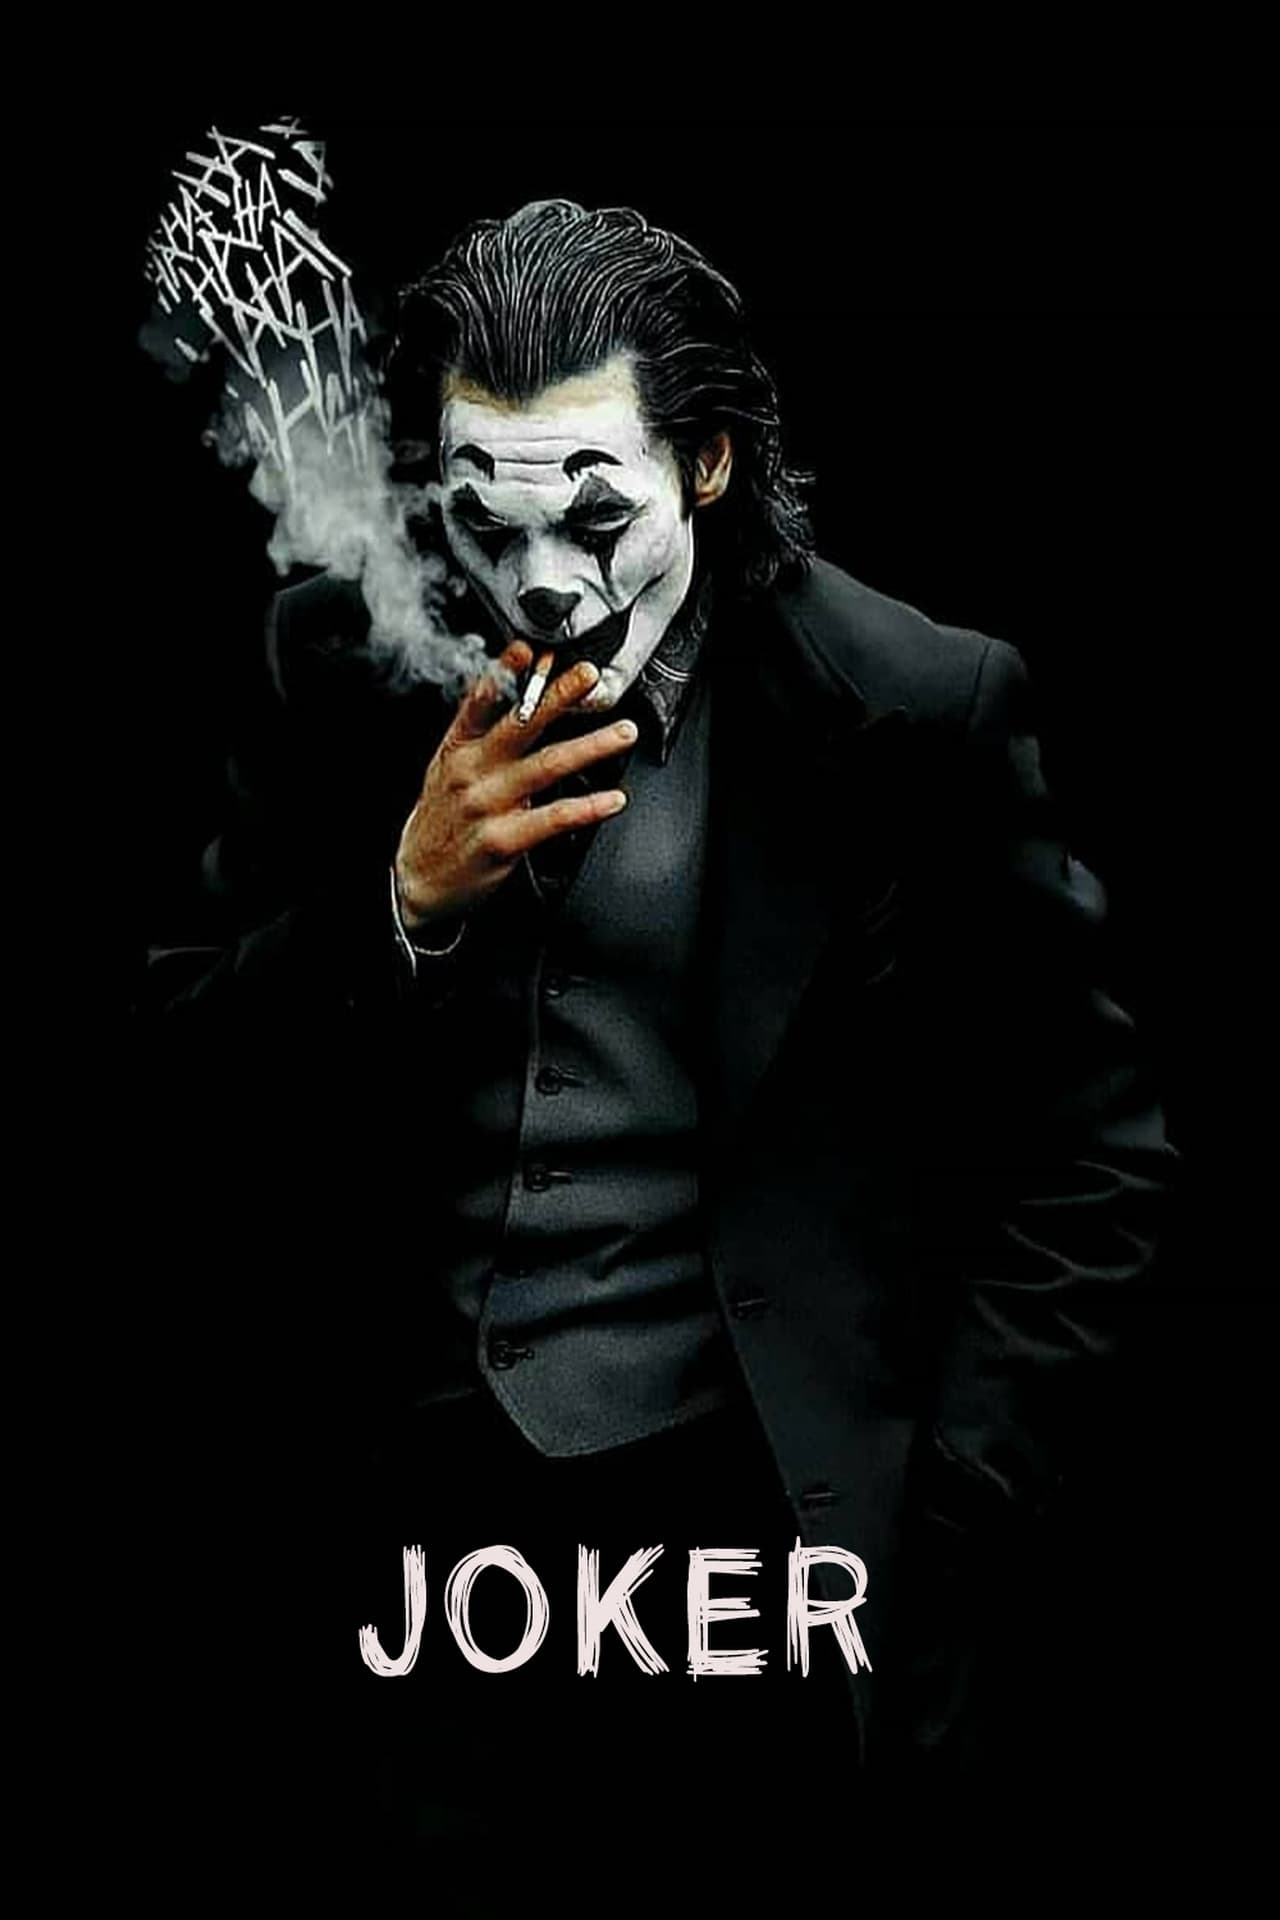 57 HQ Pictures Joker Movie Stream Reddit / 123Movies Watch Wildland 2018 Reddit Online Free Full ...